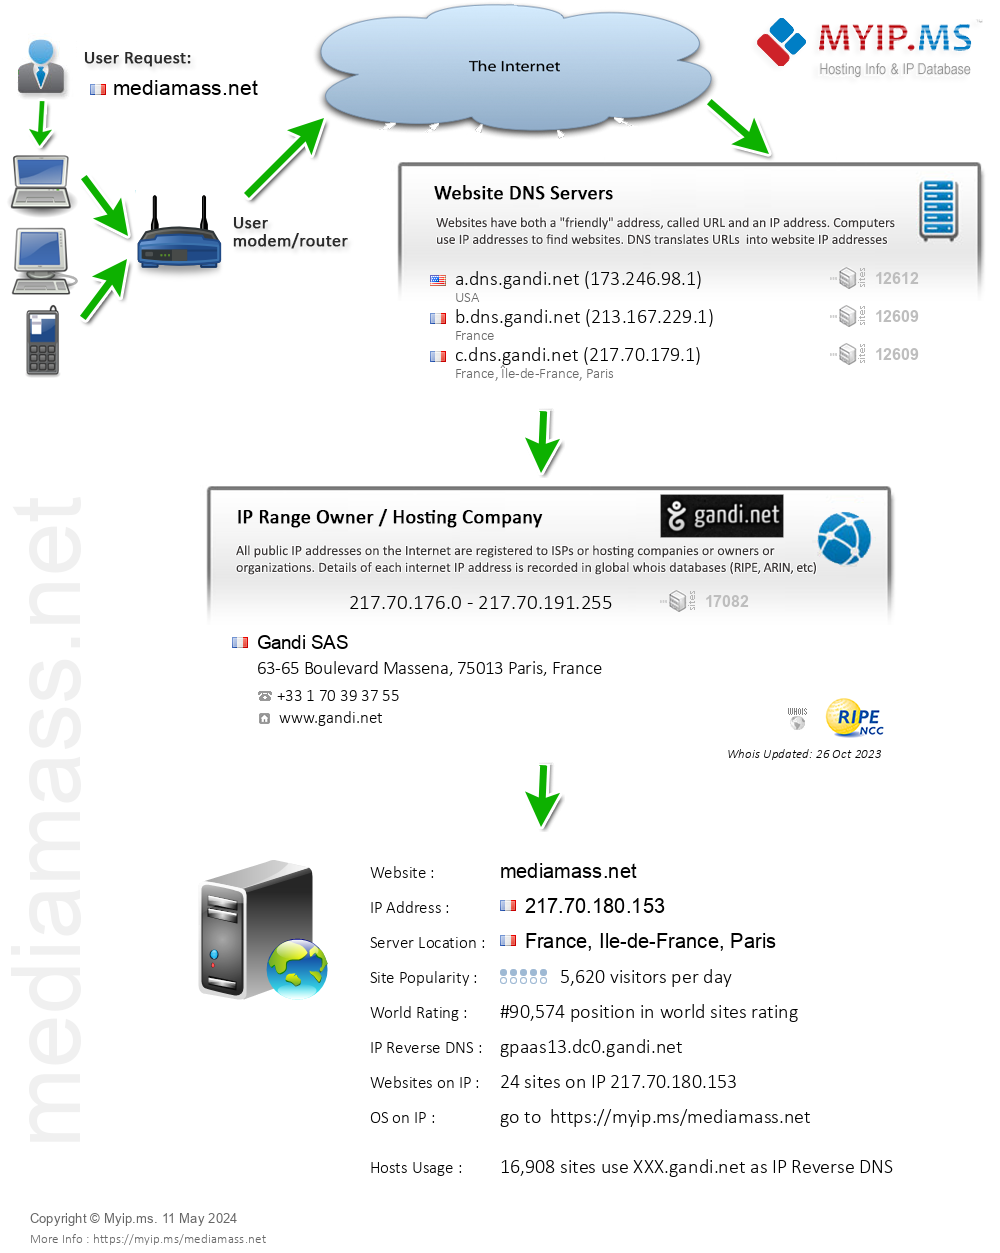 Mediamass.net - Website Hosting Visual IP Diagram